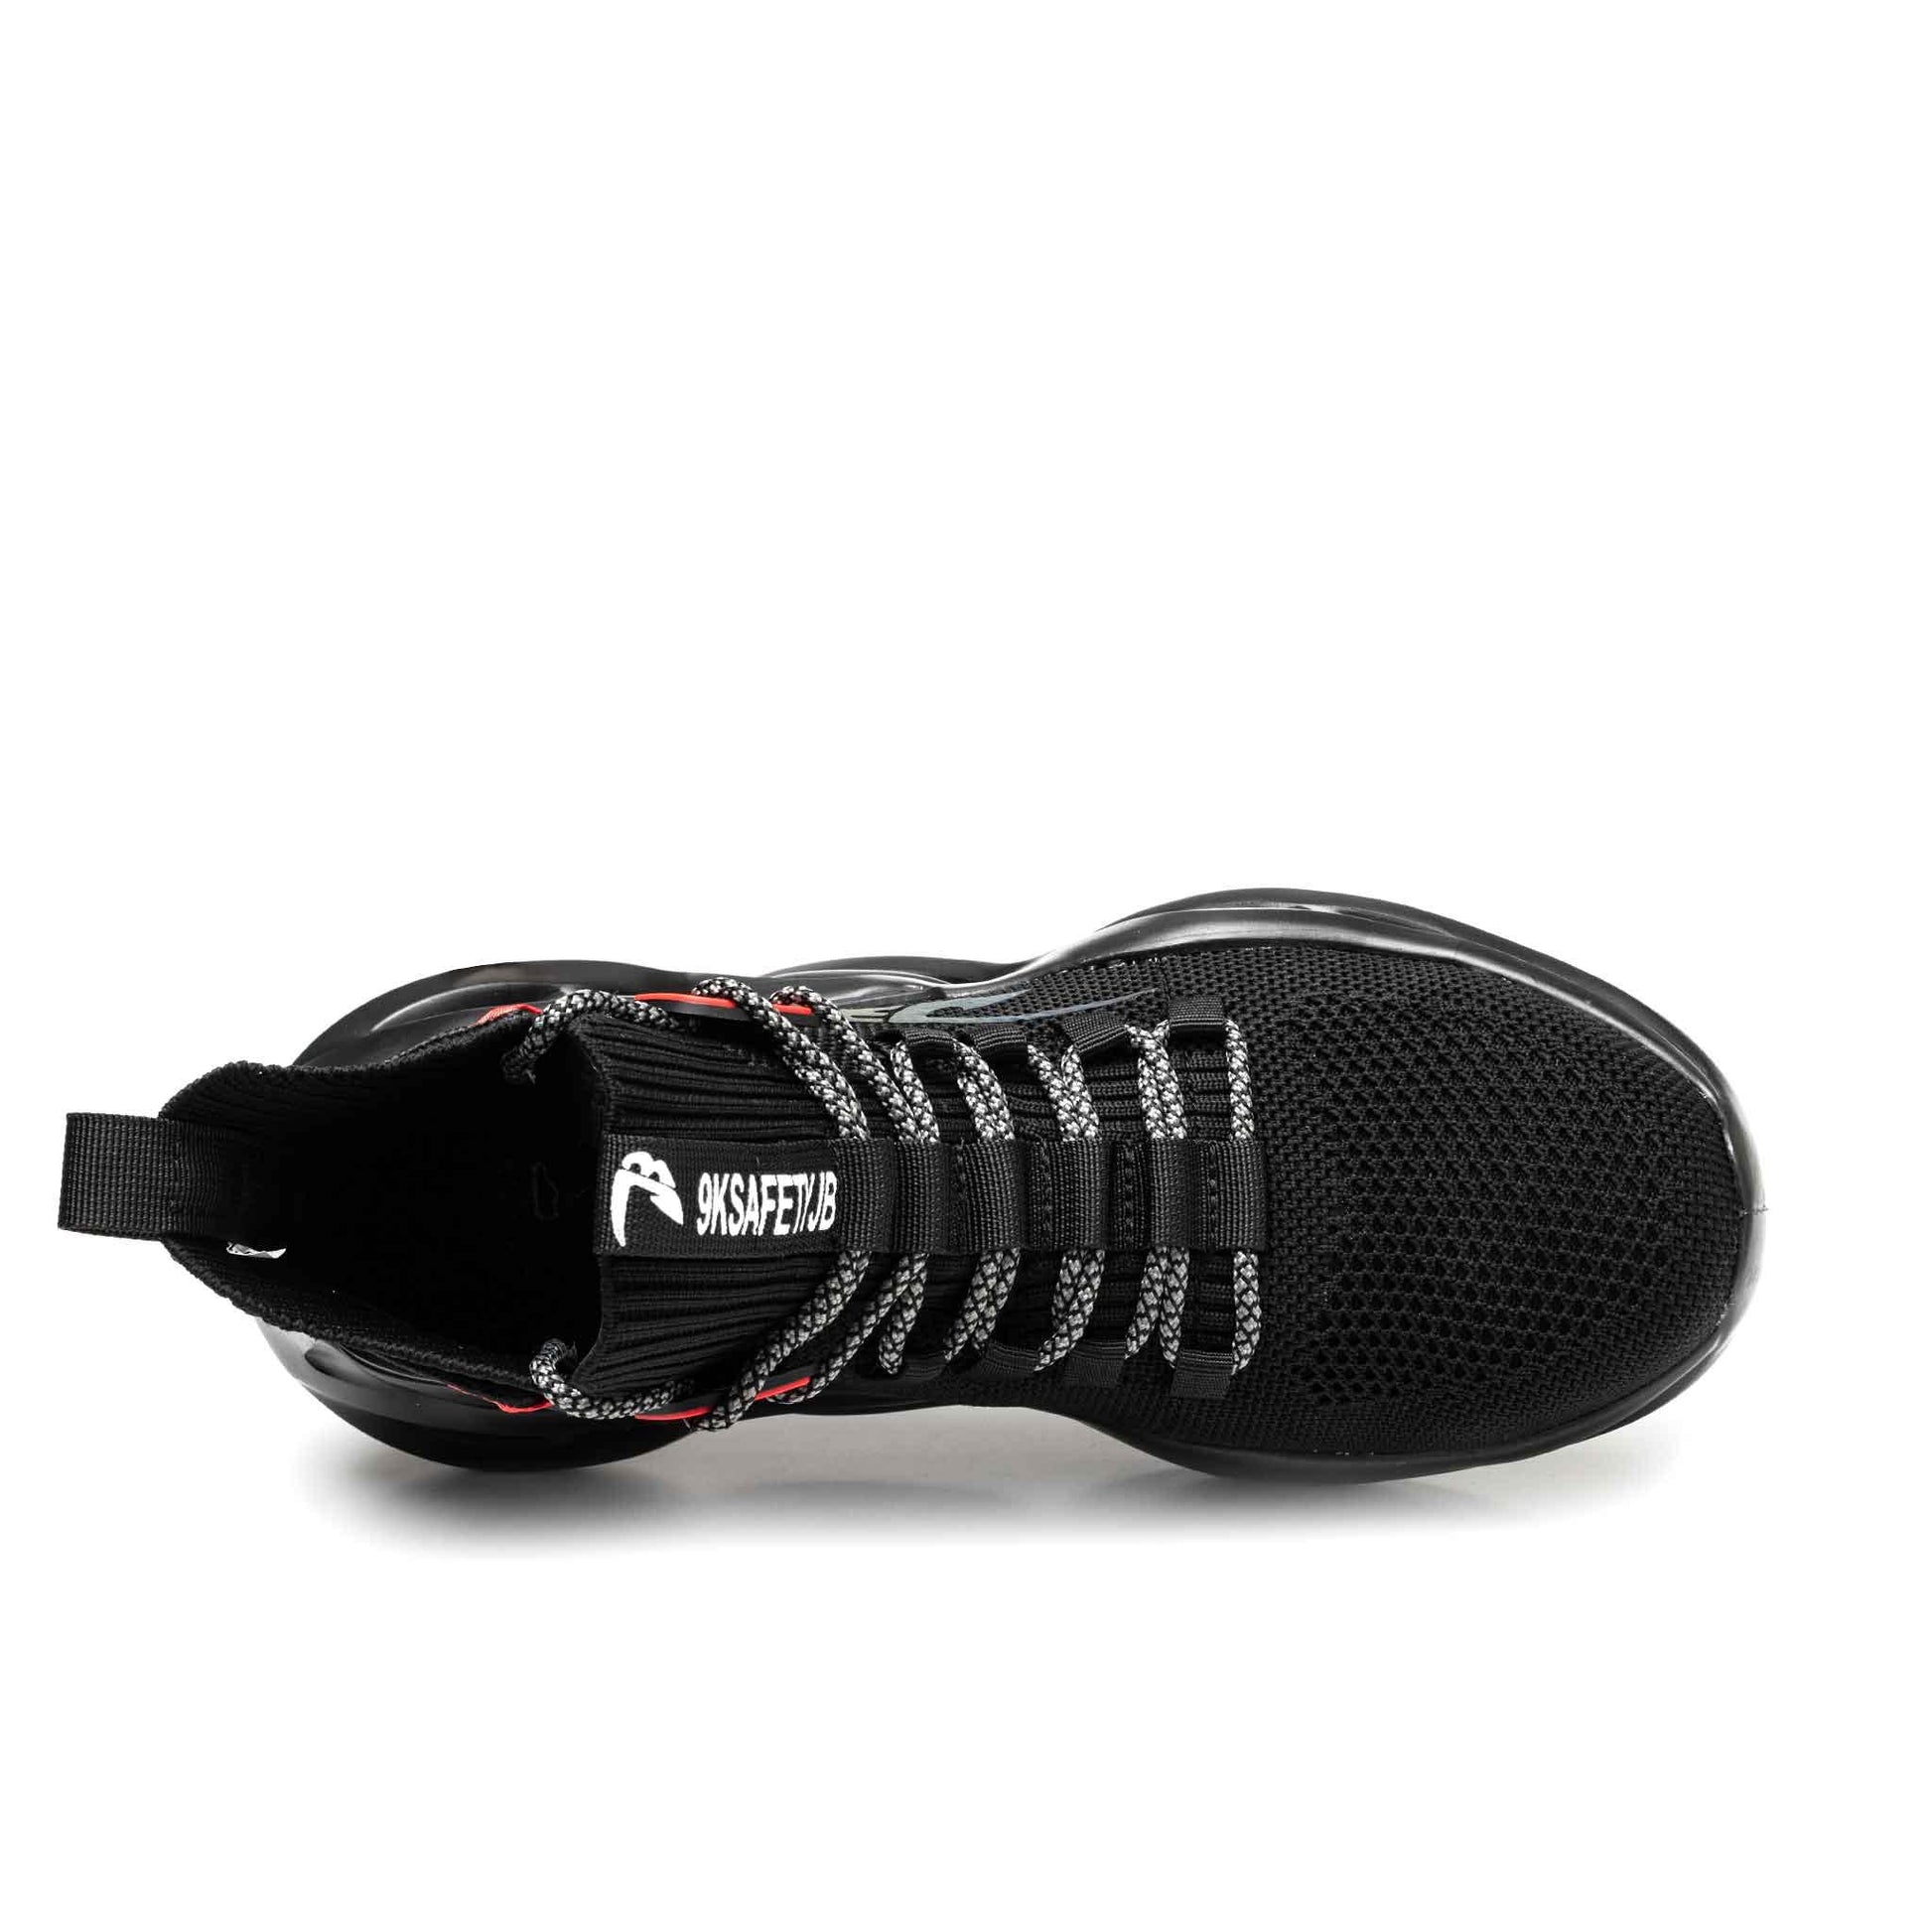 Men's Steel Toe Boots - Lightweight | B201 - USINE PRO Footwear